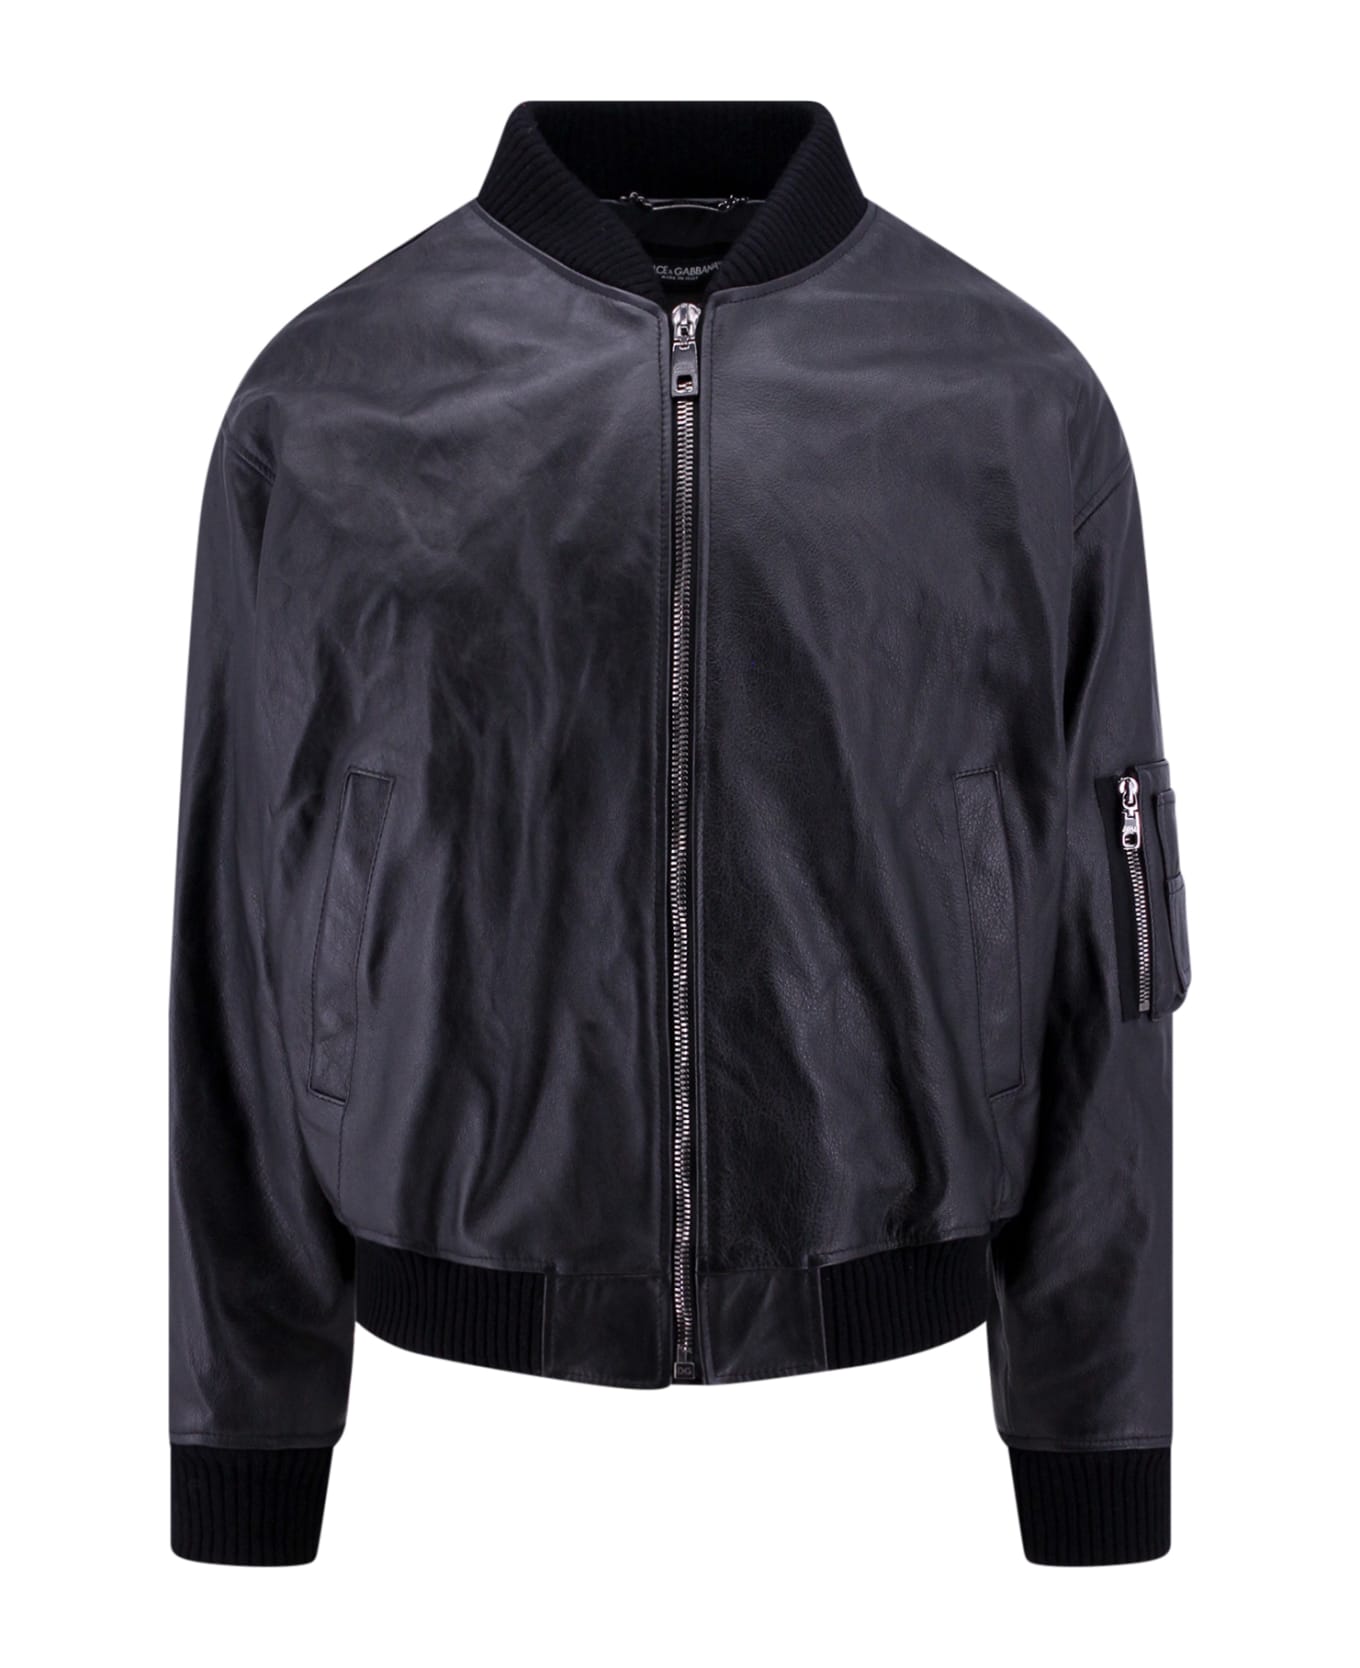 Dolce & Gabbana Leather Jacket - black ジャケット